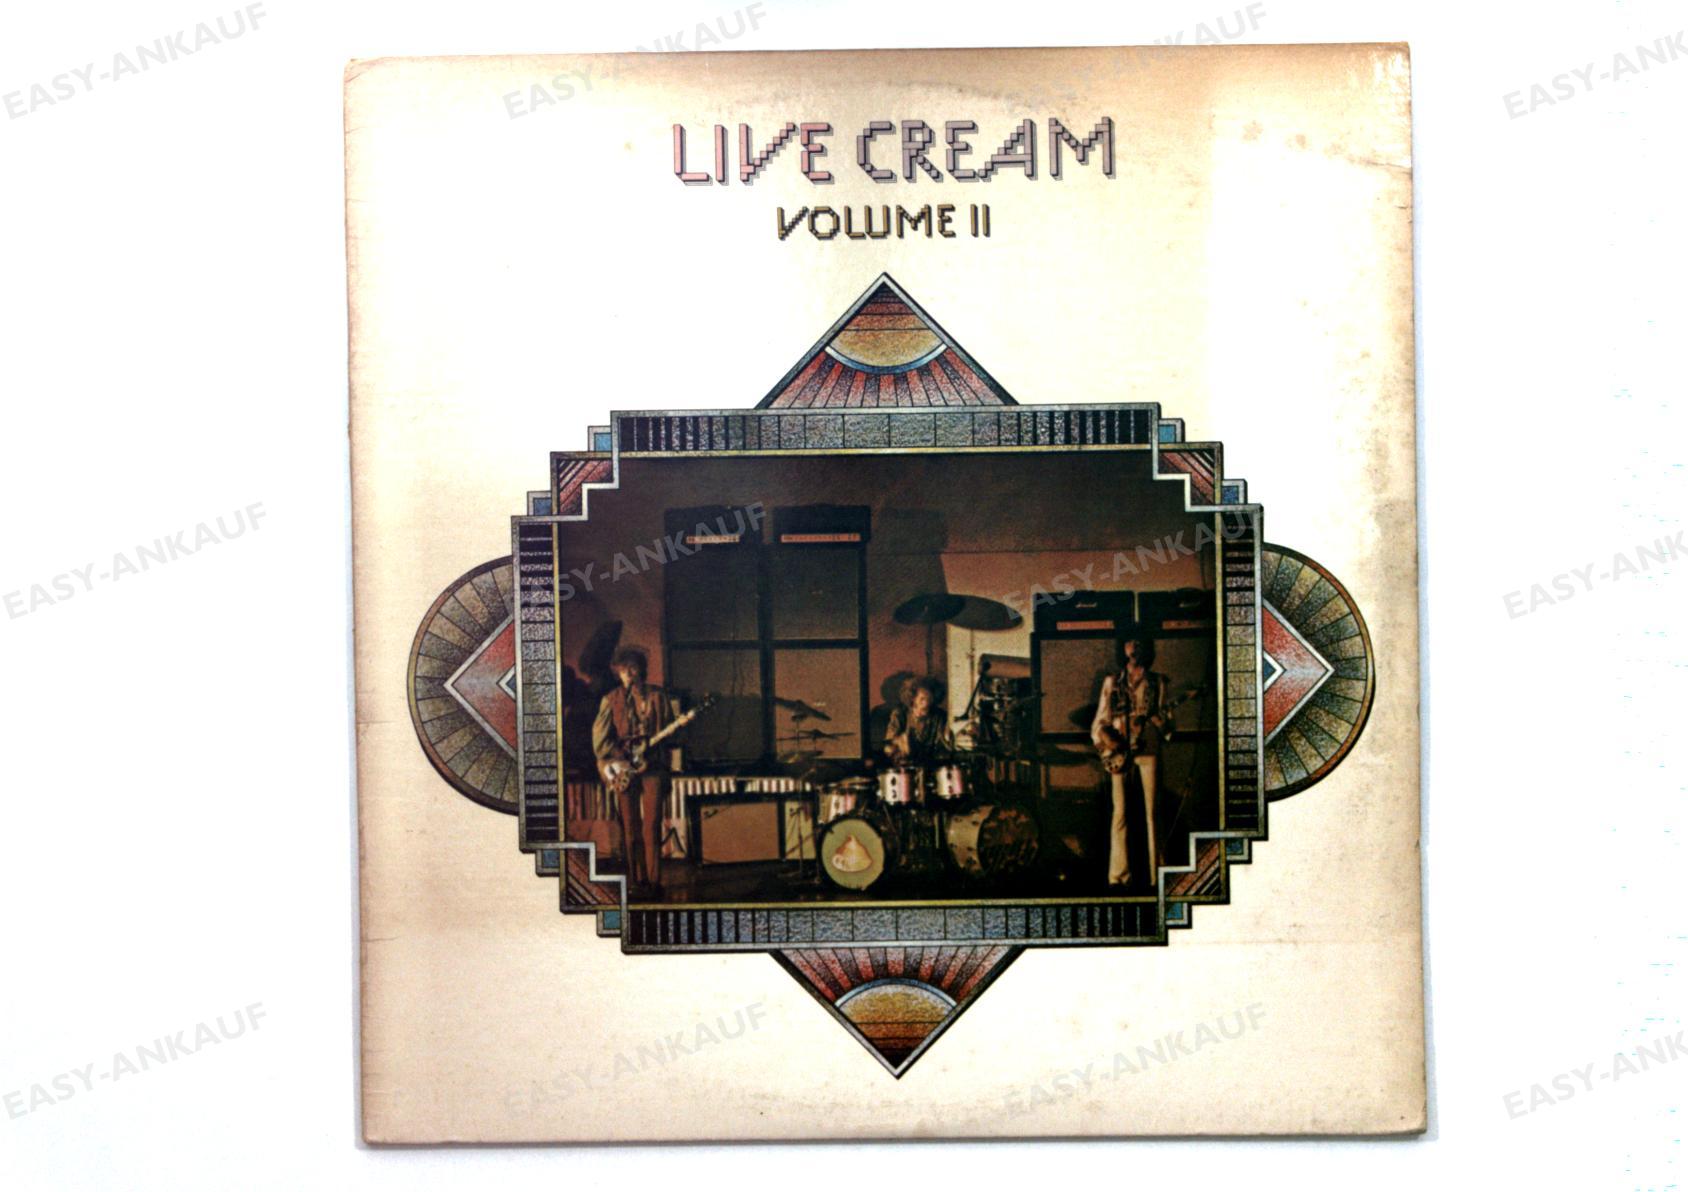 Cream - Live Cream Volume II US LP 1972 //5 - Picture 1 of 1